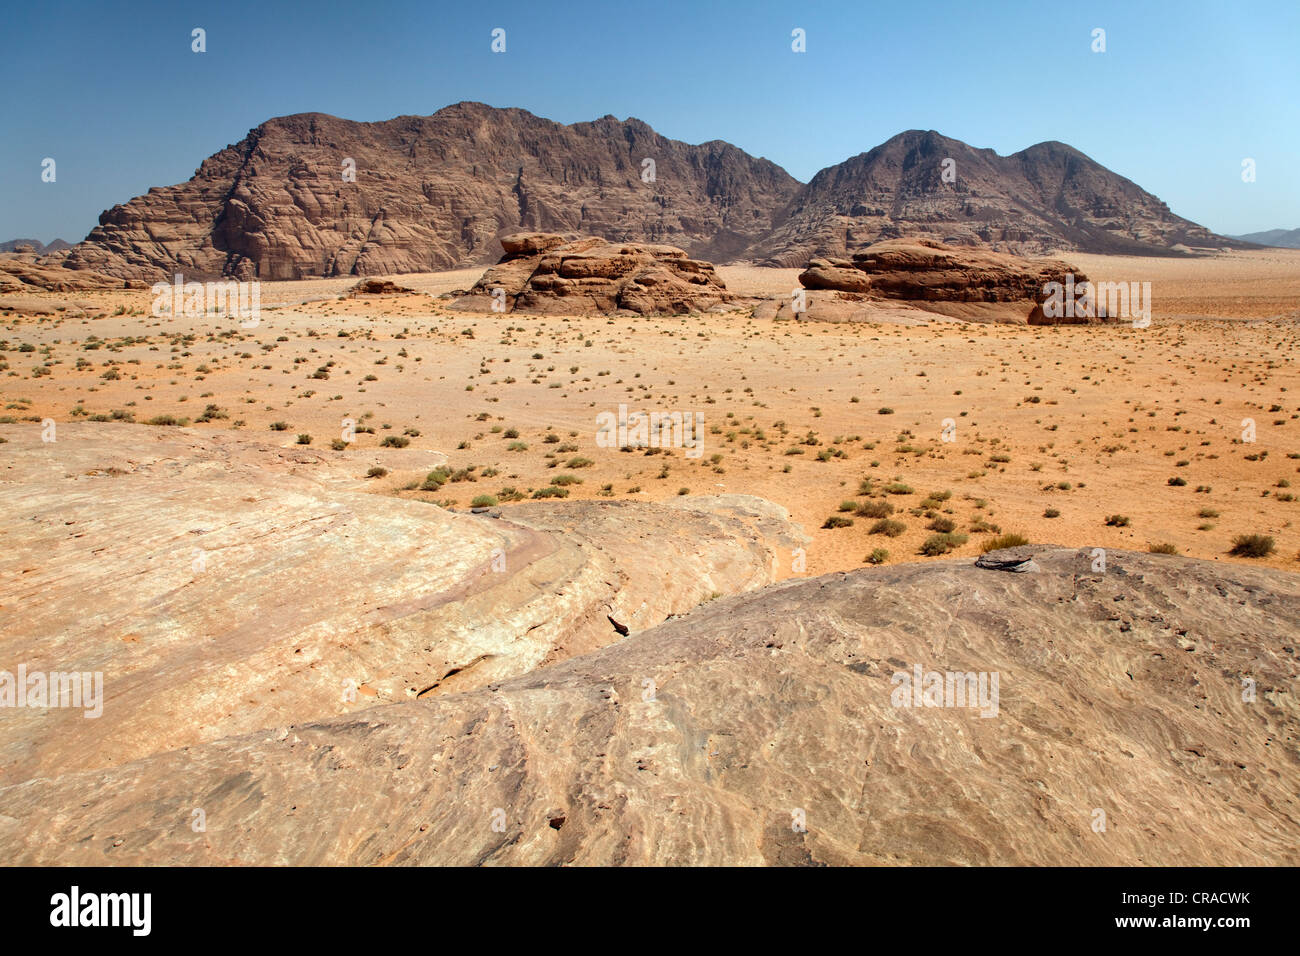 Vaste plaine, désert, montagnes, Wadi Rum, Royaume hachémite de Jordanie, Moyen-Orient, Asie Banque D'Images